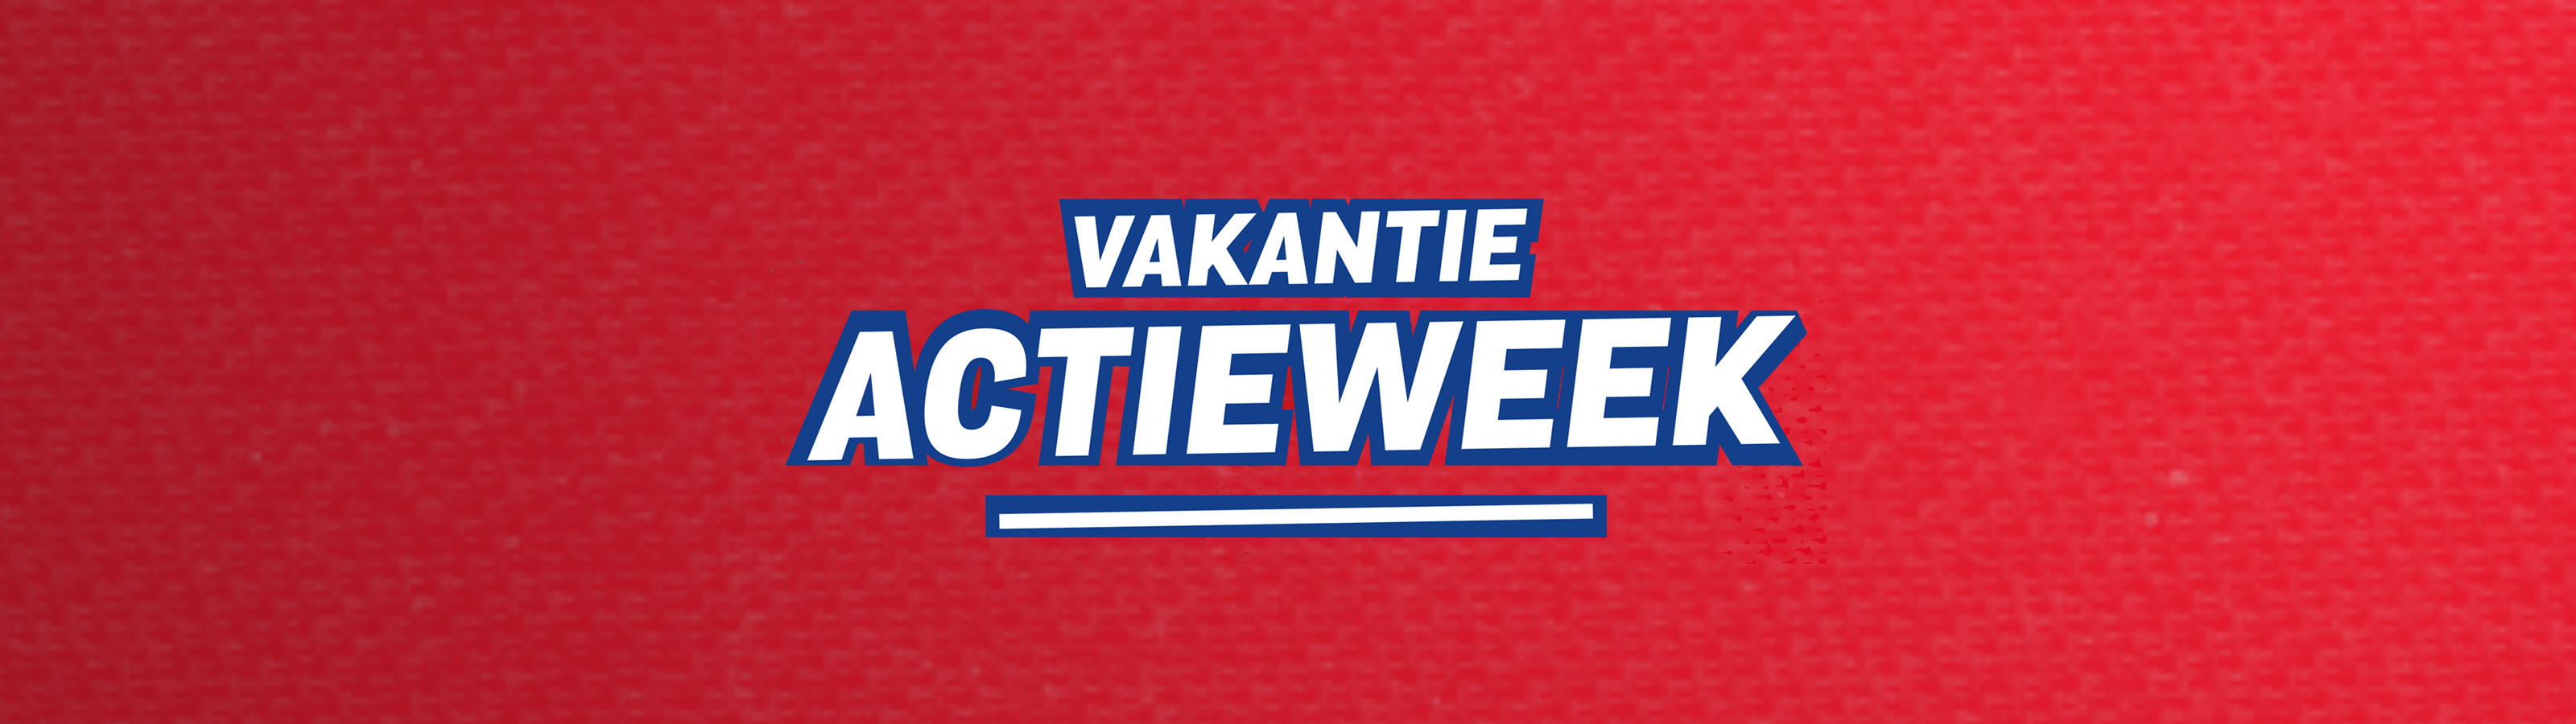 Vakantie Actieweek in de FC Utrecht Fanshop